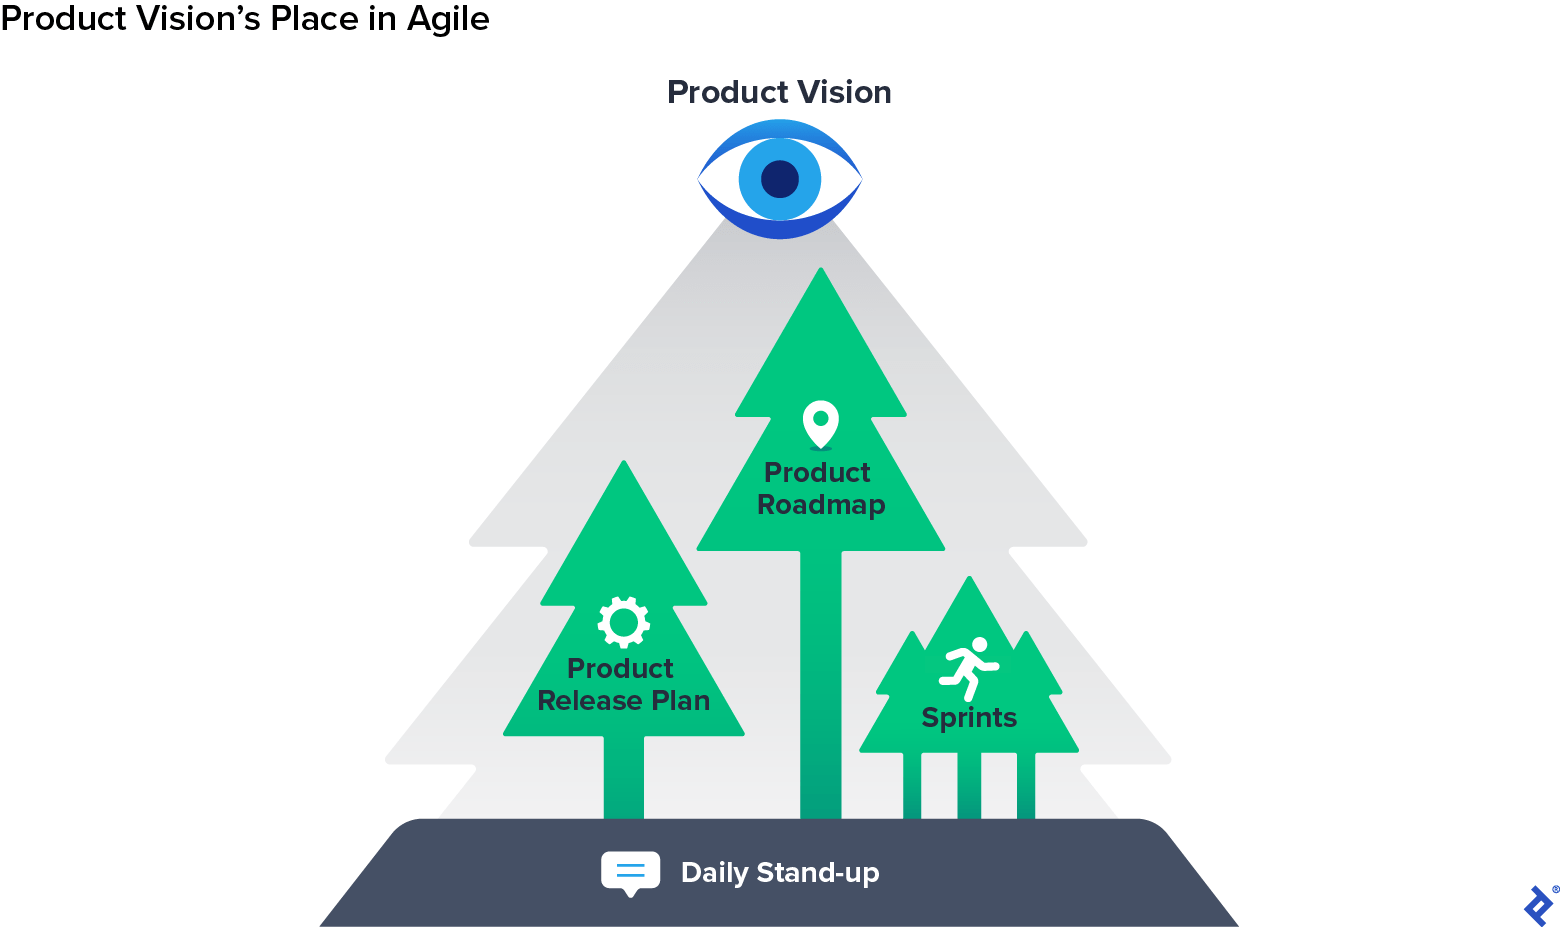 Un bosque etiquetado como Product Vision, que consta de árboles etiquetados como Sprints, Product Release Plan y Product Roadmap, en un suelo etiquetado como Daily Stand-up.